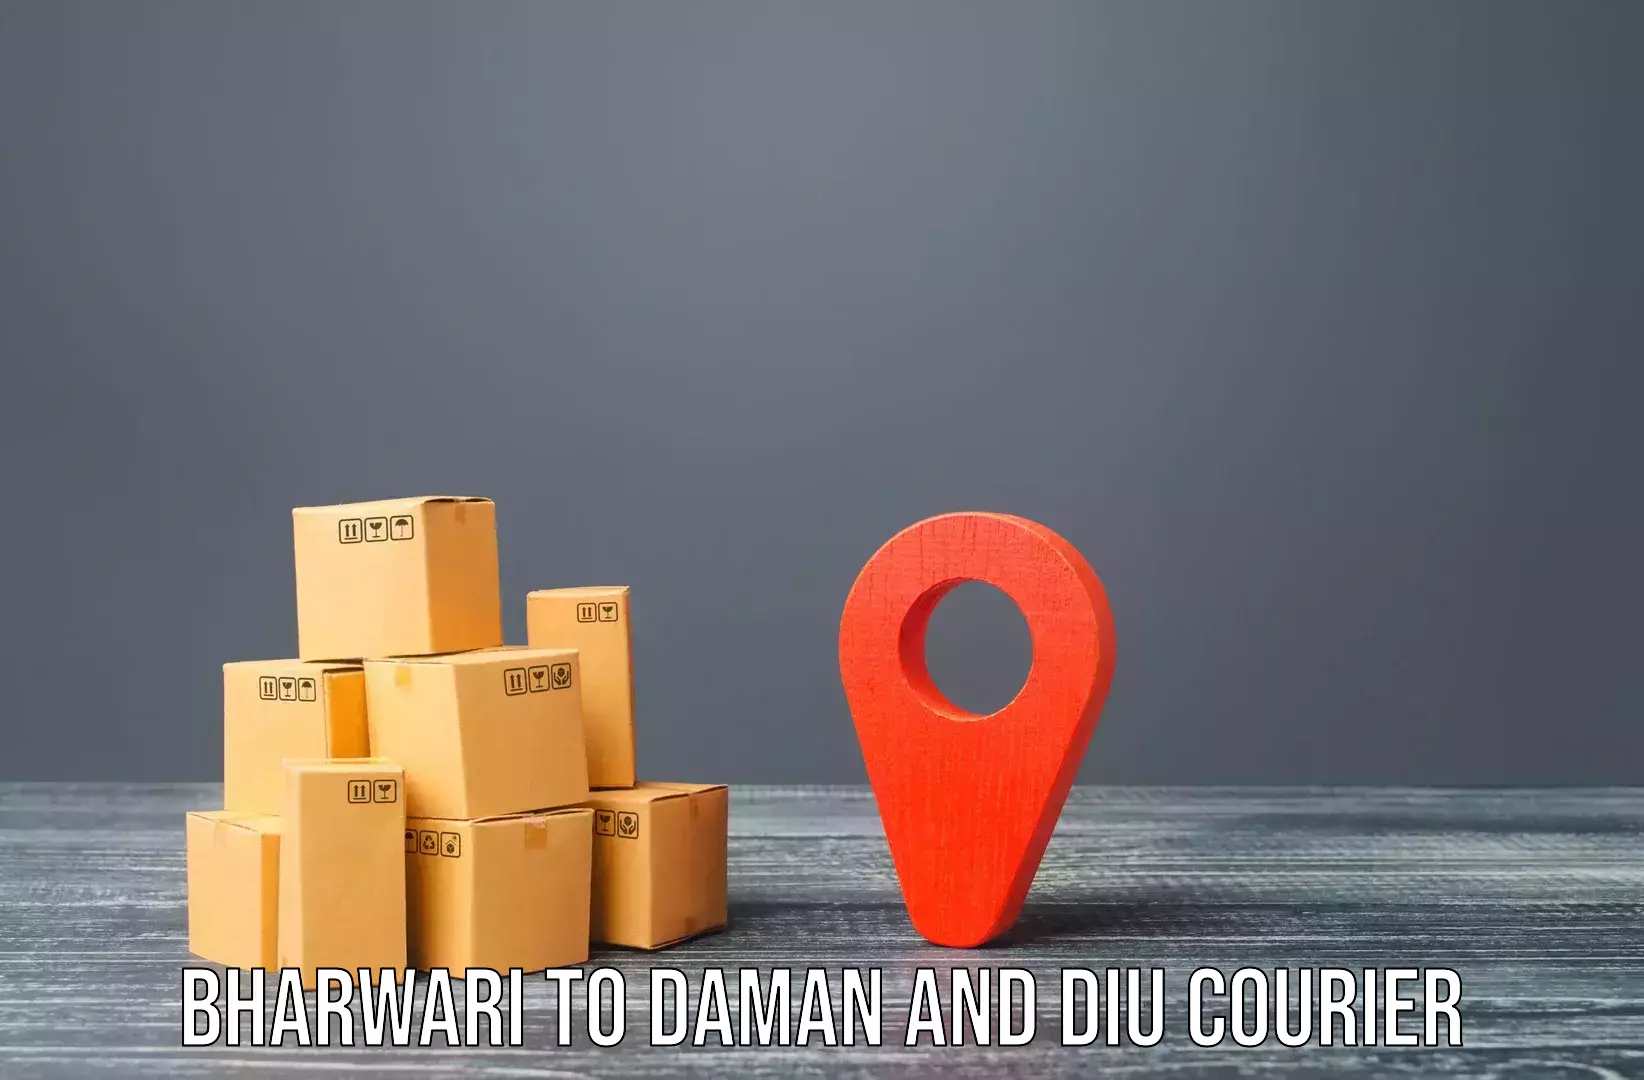 Furniture moving experts Bharwari to Daman and Diu